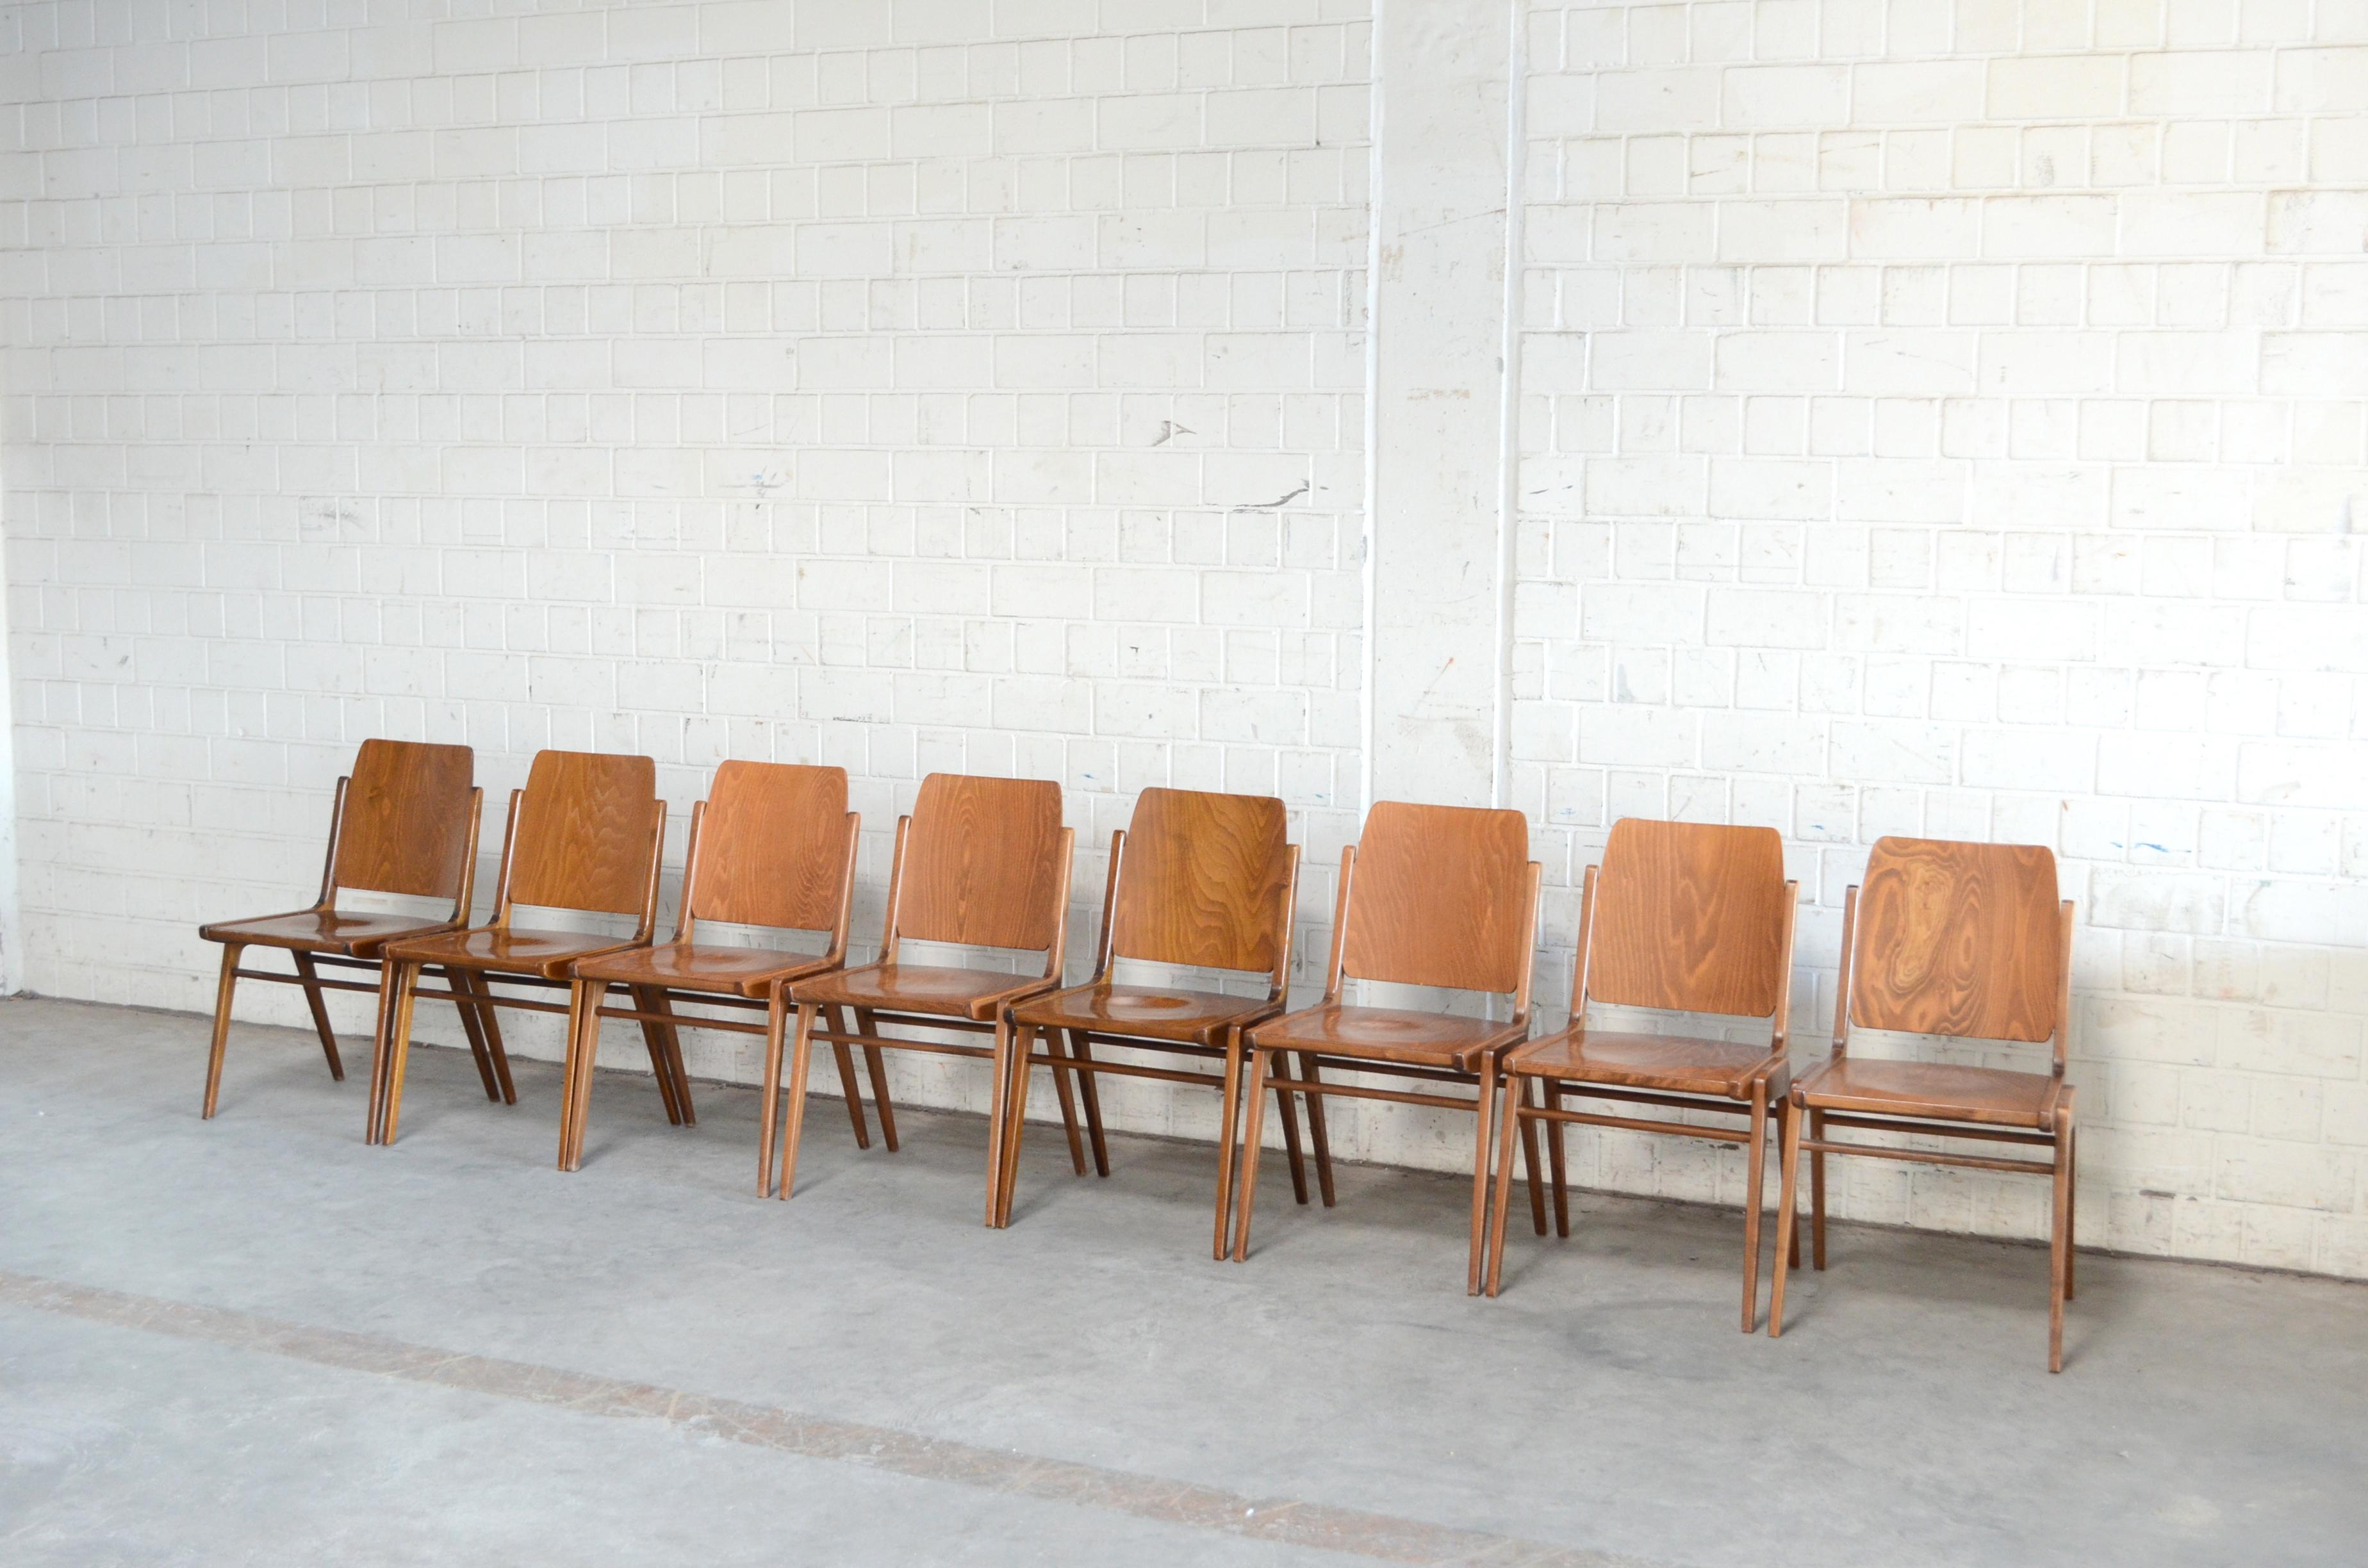 Diese Austro-Stühle wurden 1959 vom österreichischen Architekten Franz Schuster entworfen und von Wiesner-Hager produziert.
Die Stühle werden auch als 